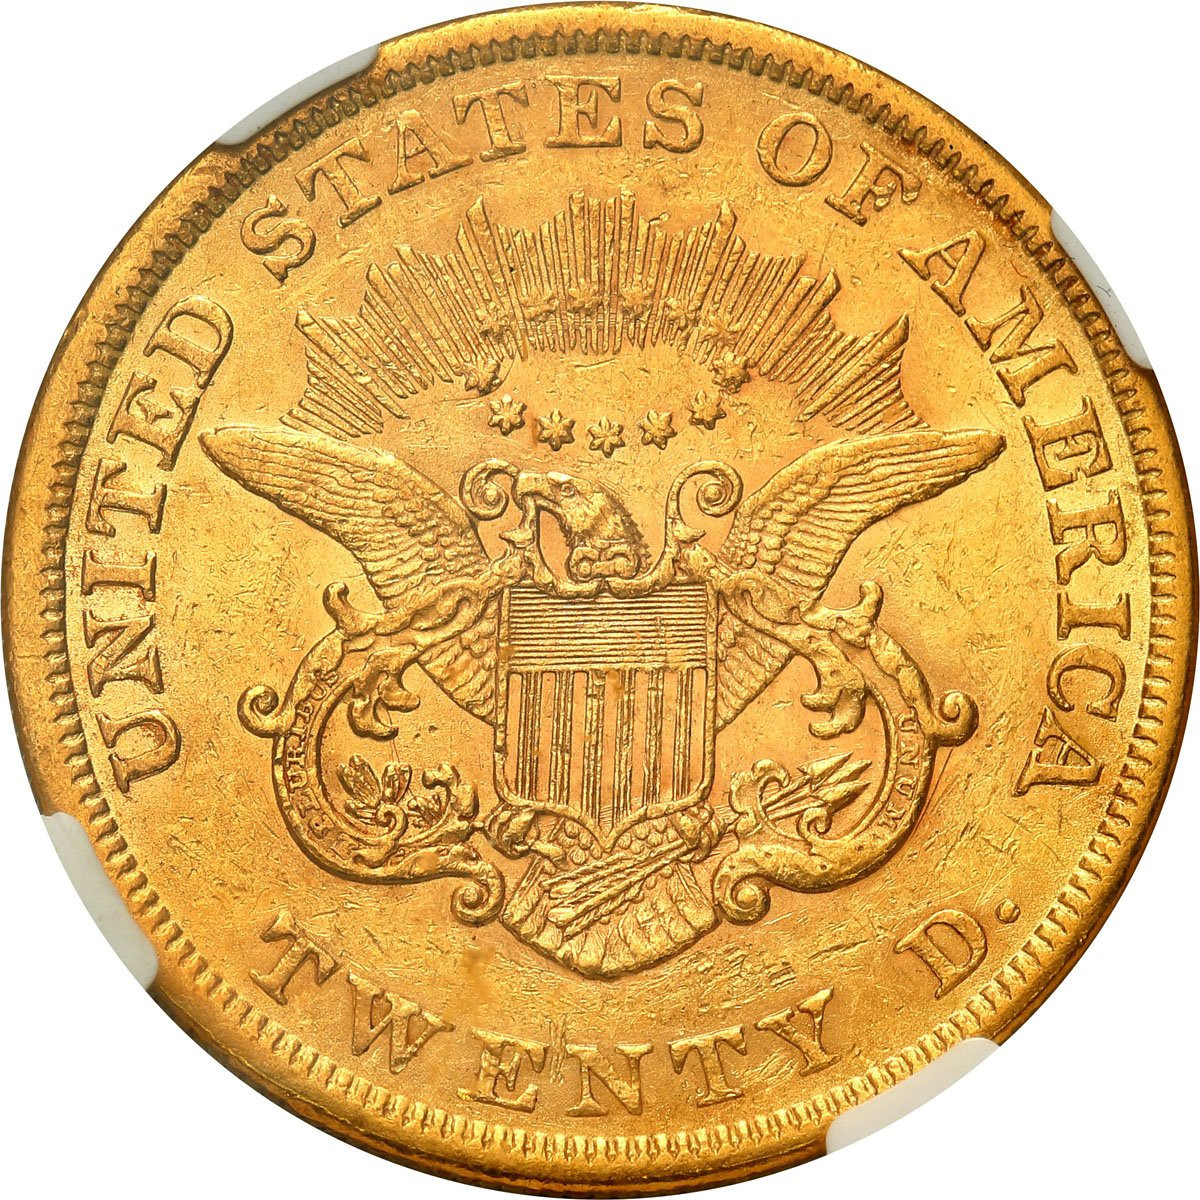 USA. 20 dolarów 1855 Filadelfia NGC AU55